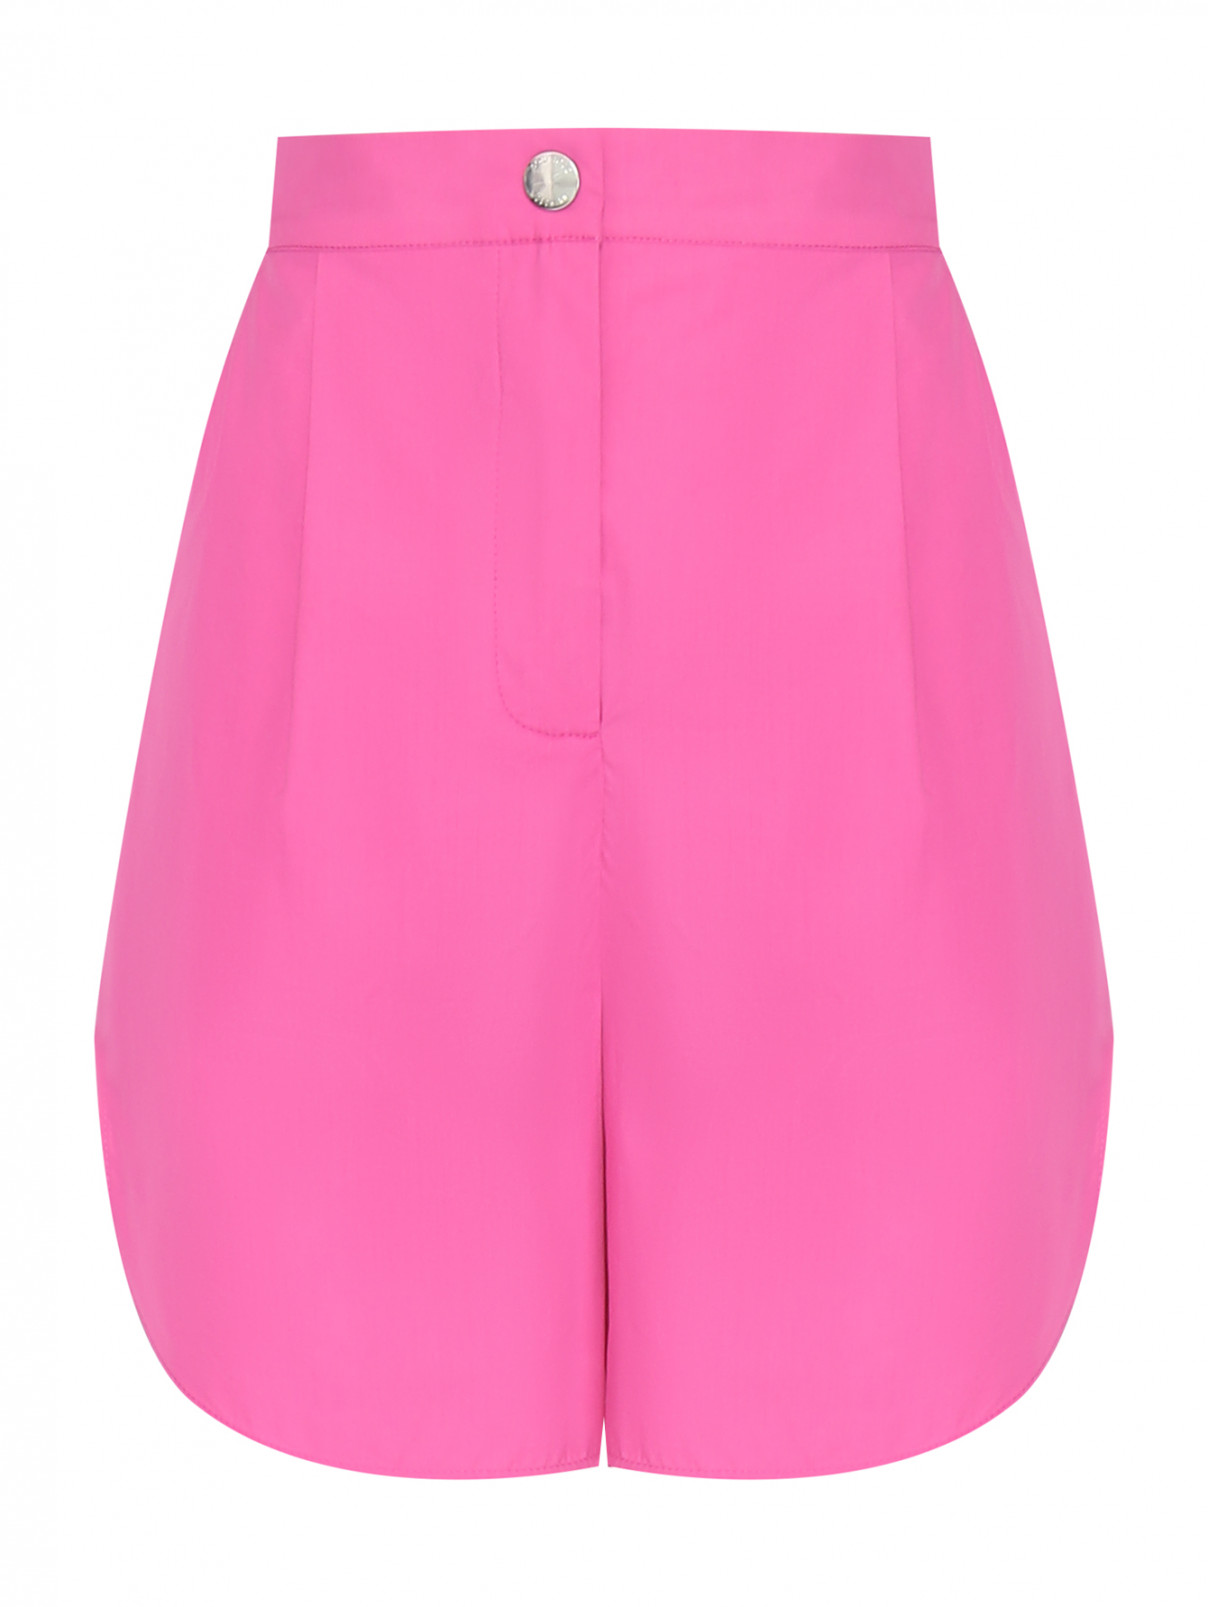 Шорты из хлопка с карманами Moschino Boutique  –  Общий вид  – Цвет:  Розовый